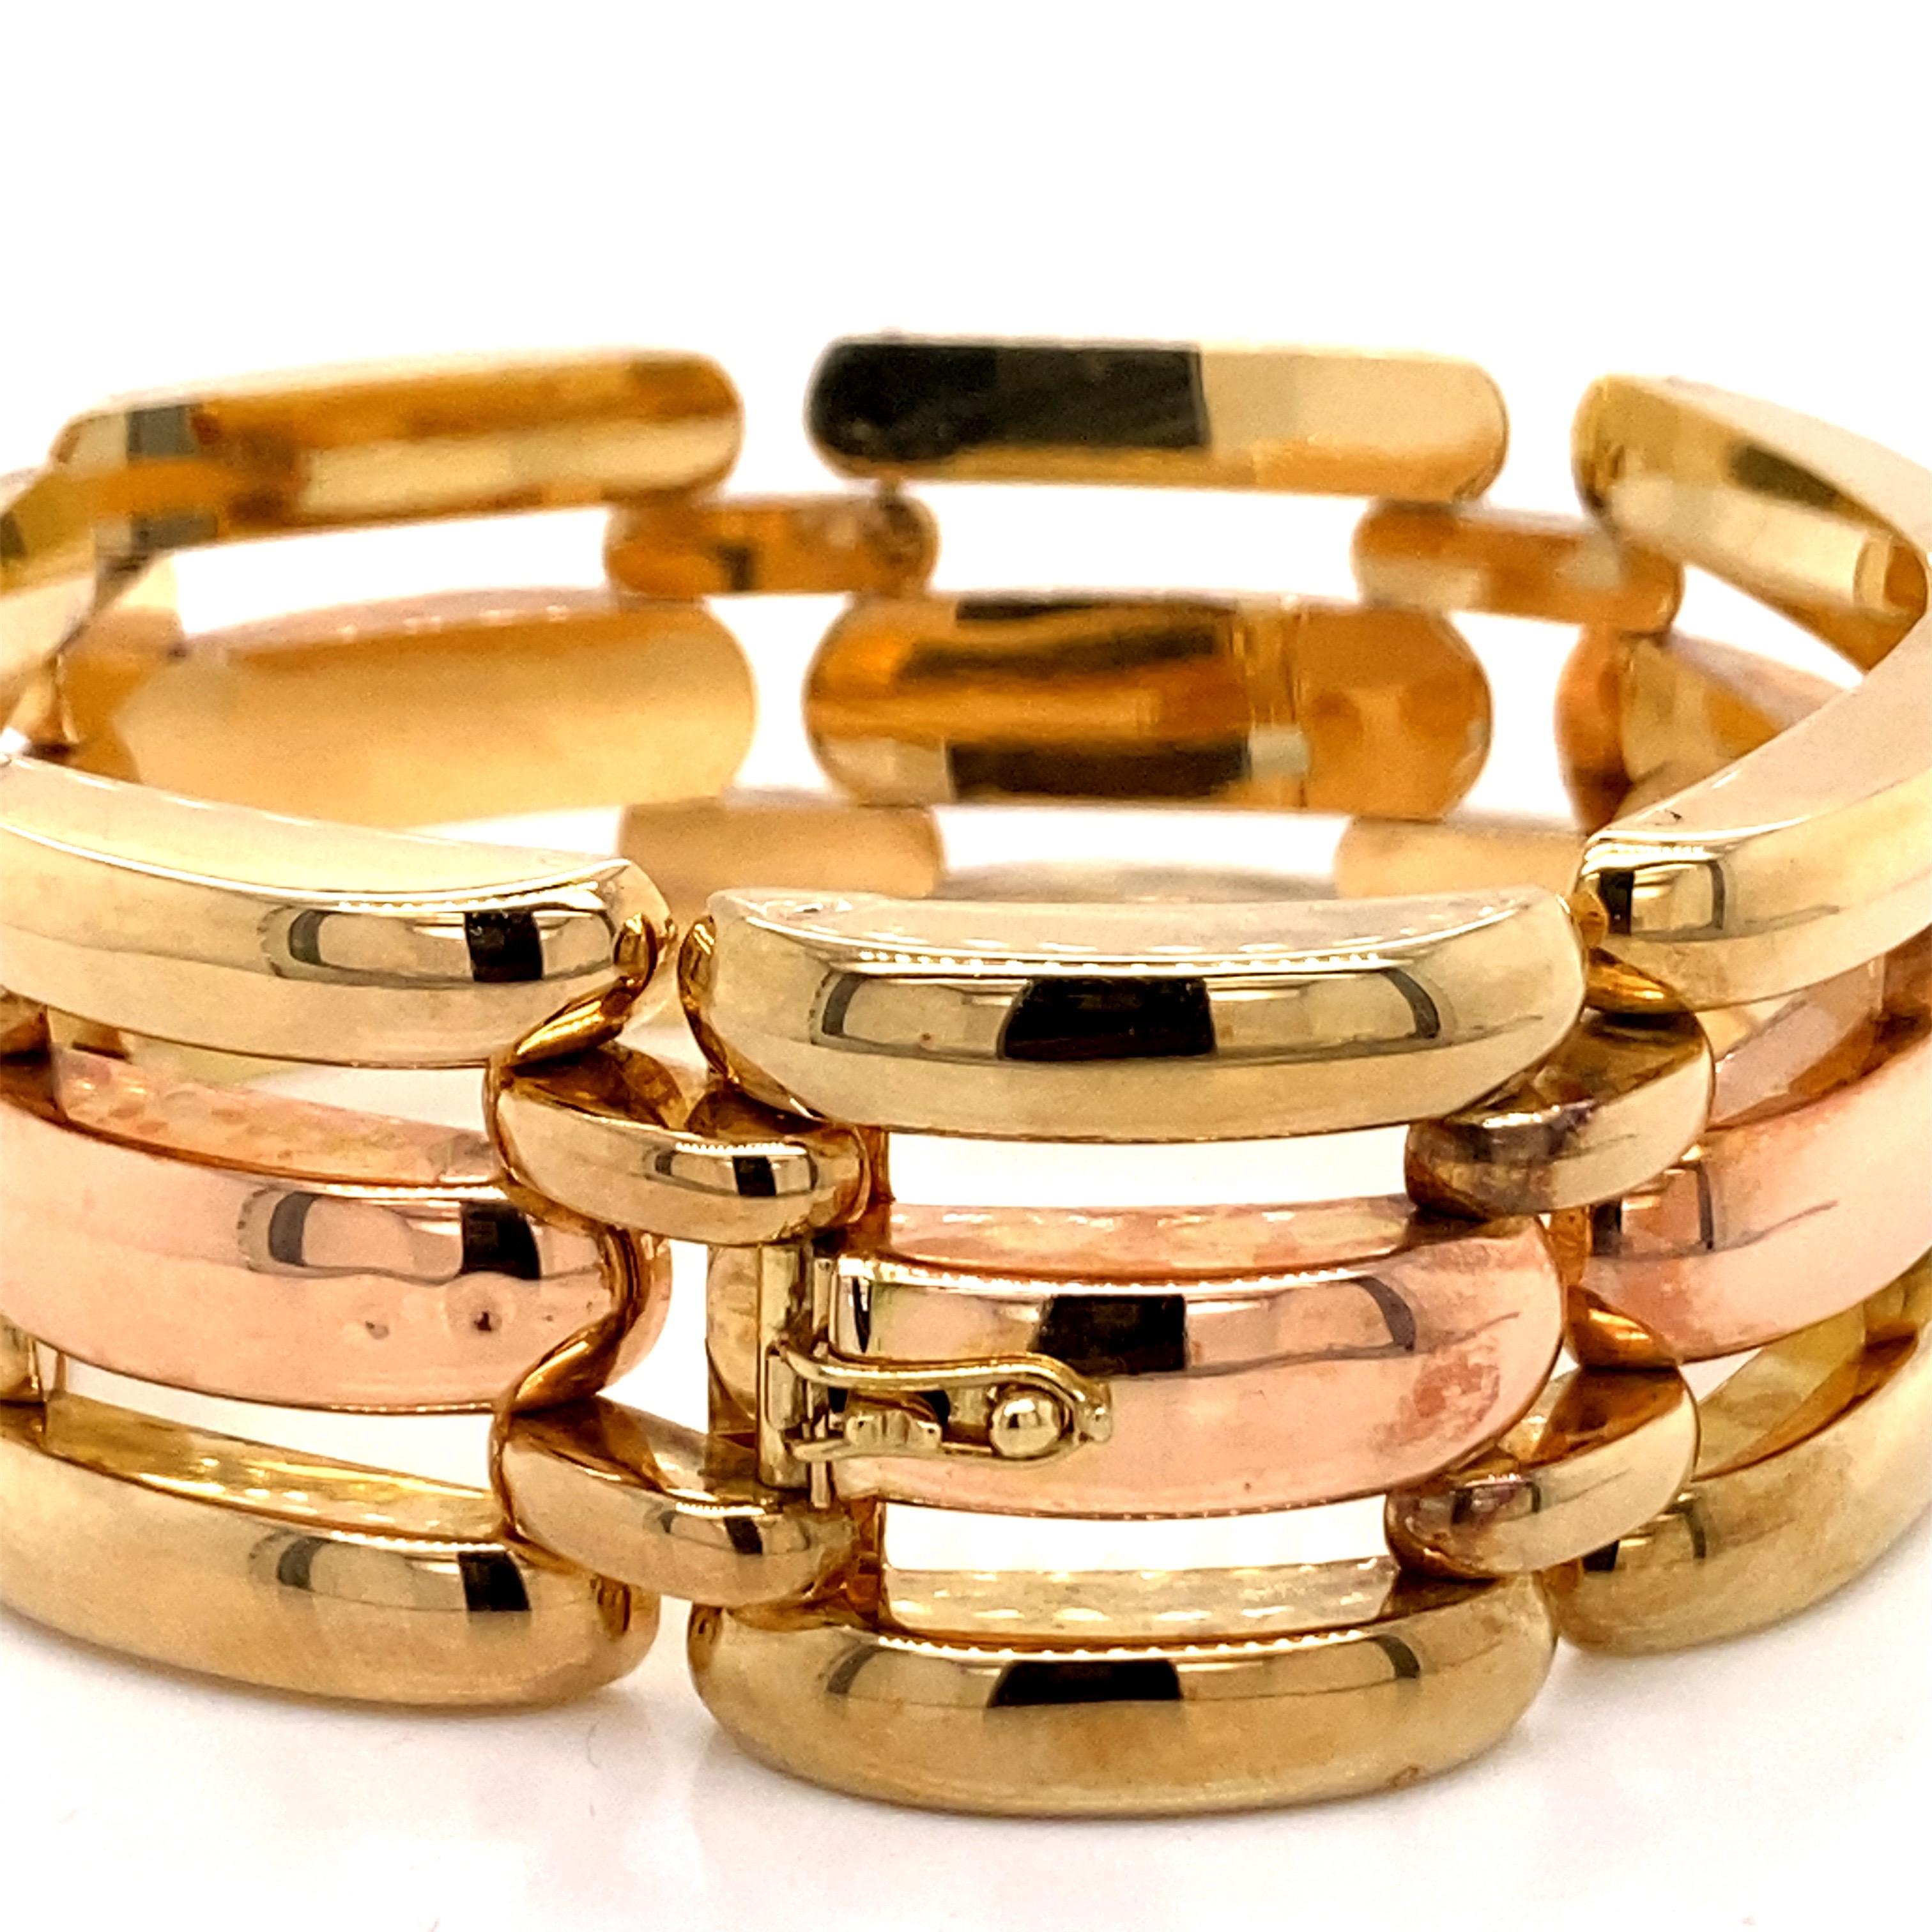 Vintage 1980s 14K Rose Gold and Green Gold Wide Link Bracelet - Das Armband misst 7,25 Zoll lang und 1 Zoll breit und verfügt über einen versteckten Verschluss für einen kontinuierlichen Stil. Das Armband wiegt 40 Gramm.